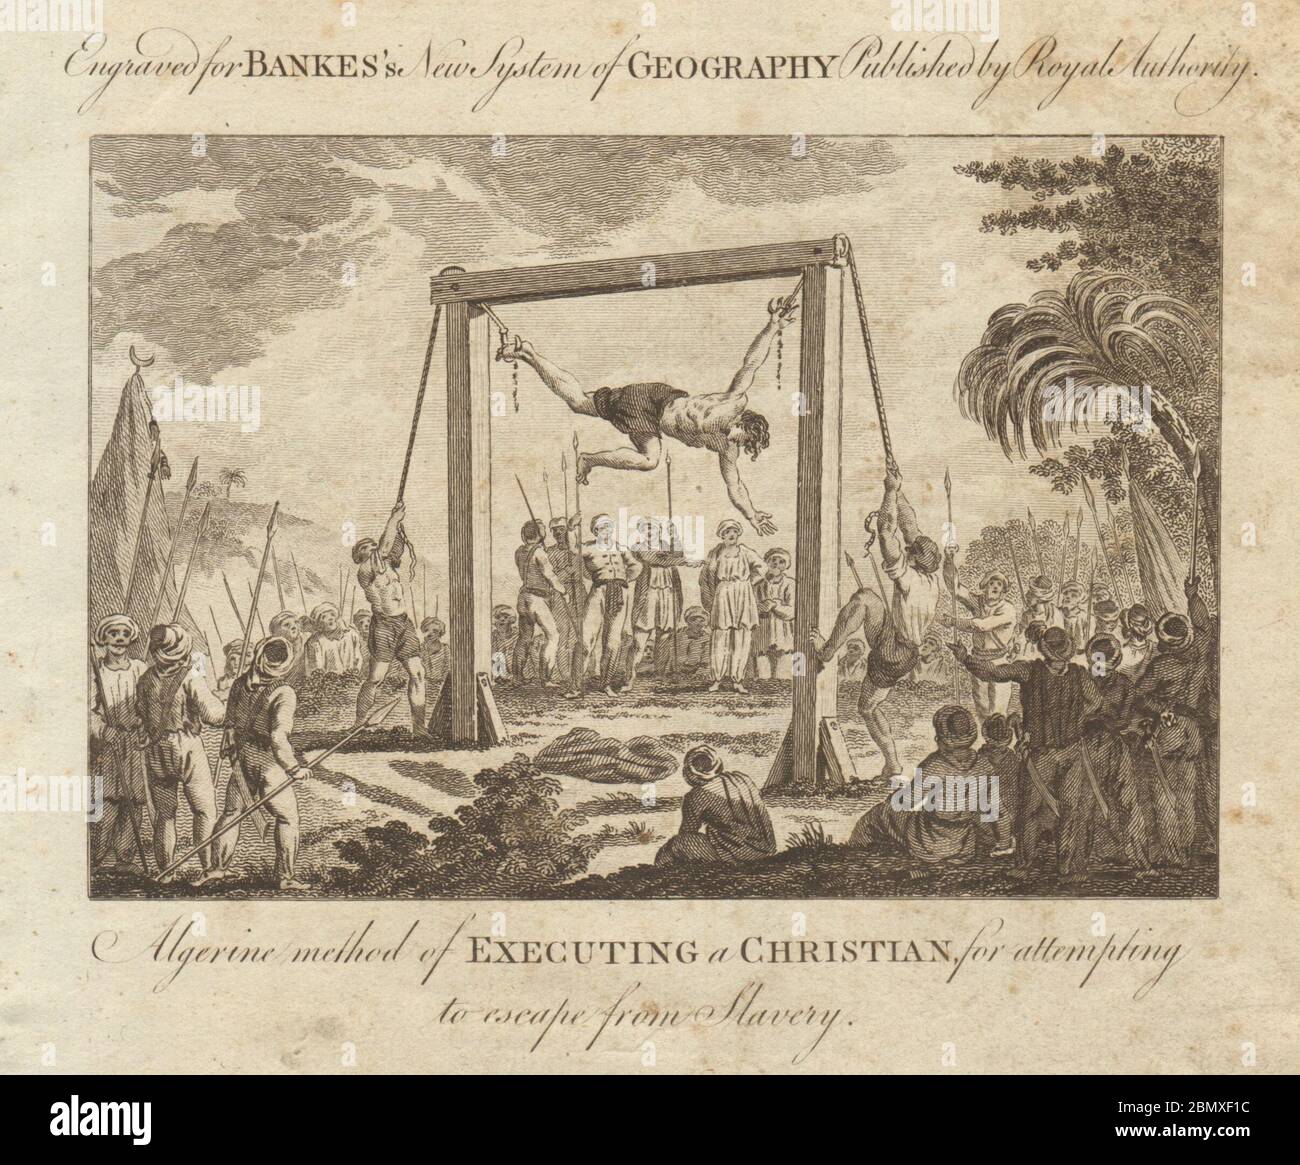 Ejecución de un cristiano por intentar escapar de la esclavitud. Argelia BANKES 1789 Foto de stock